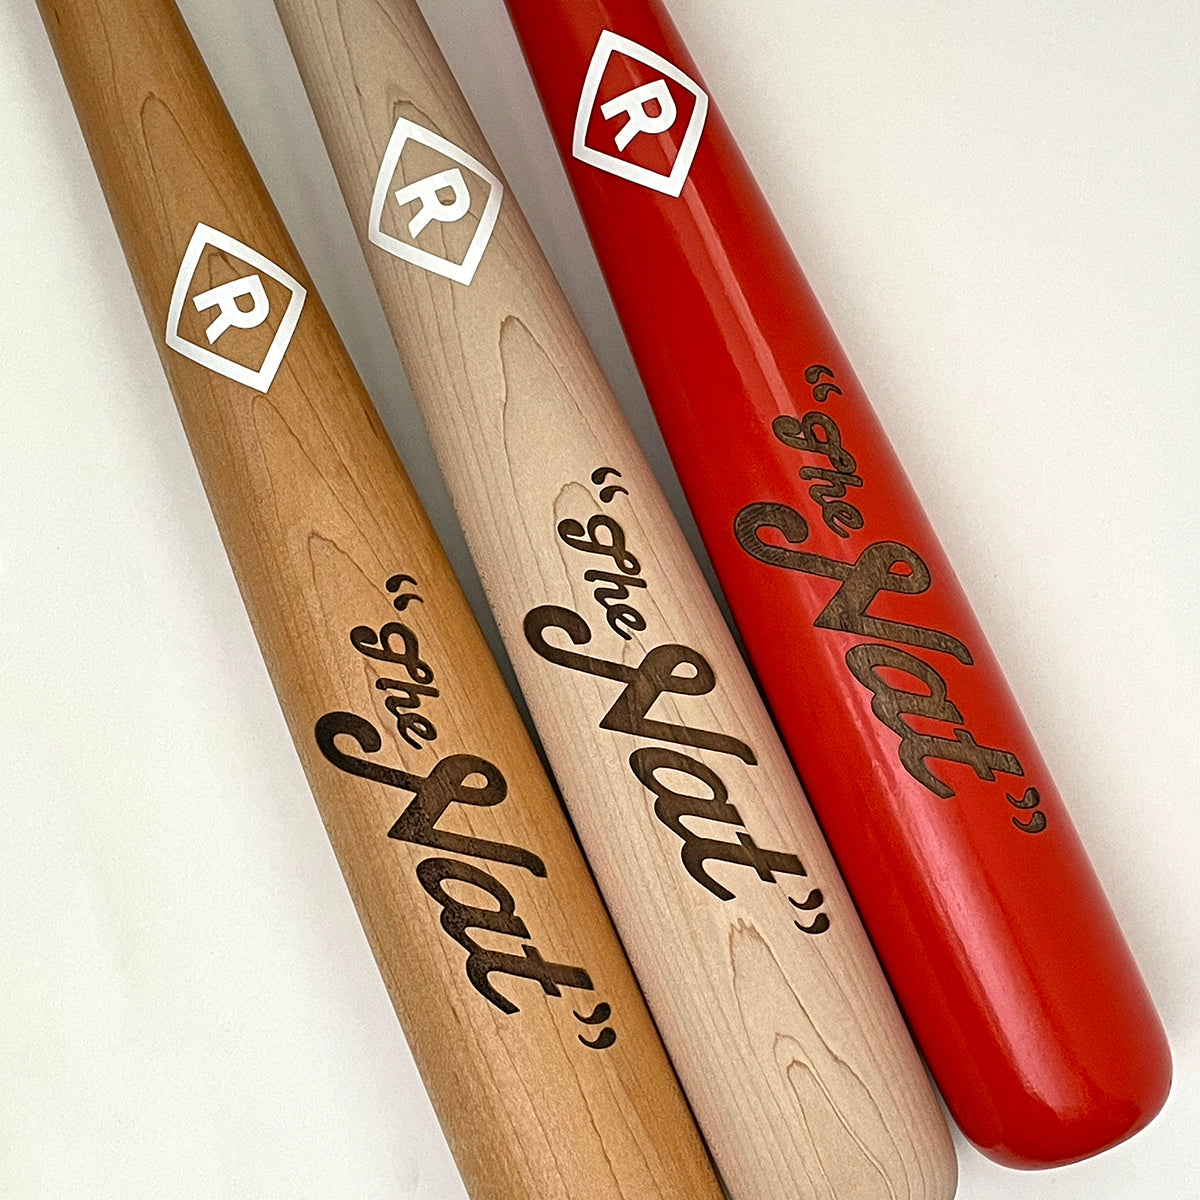 'The Nat' limited edition baseball bat